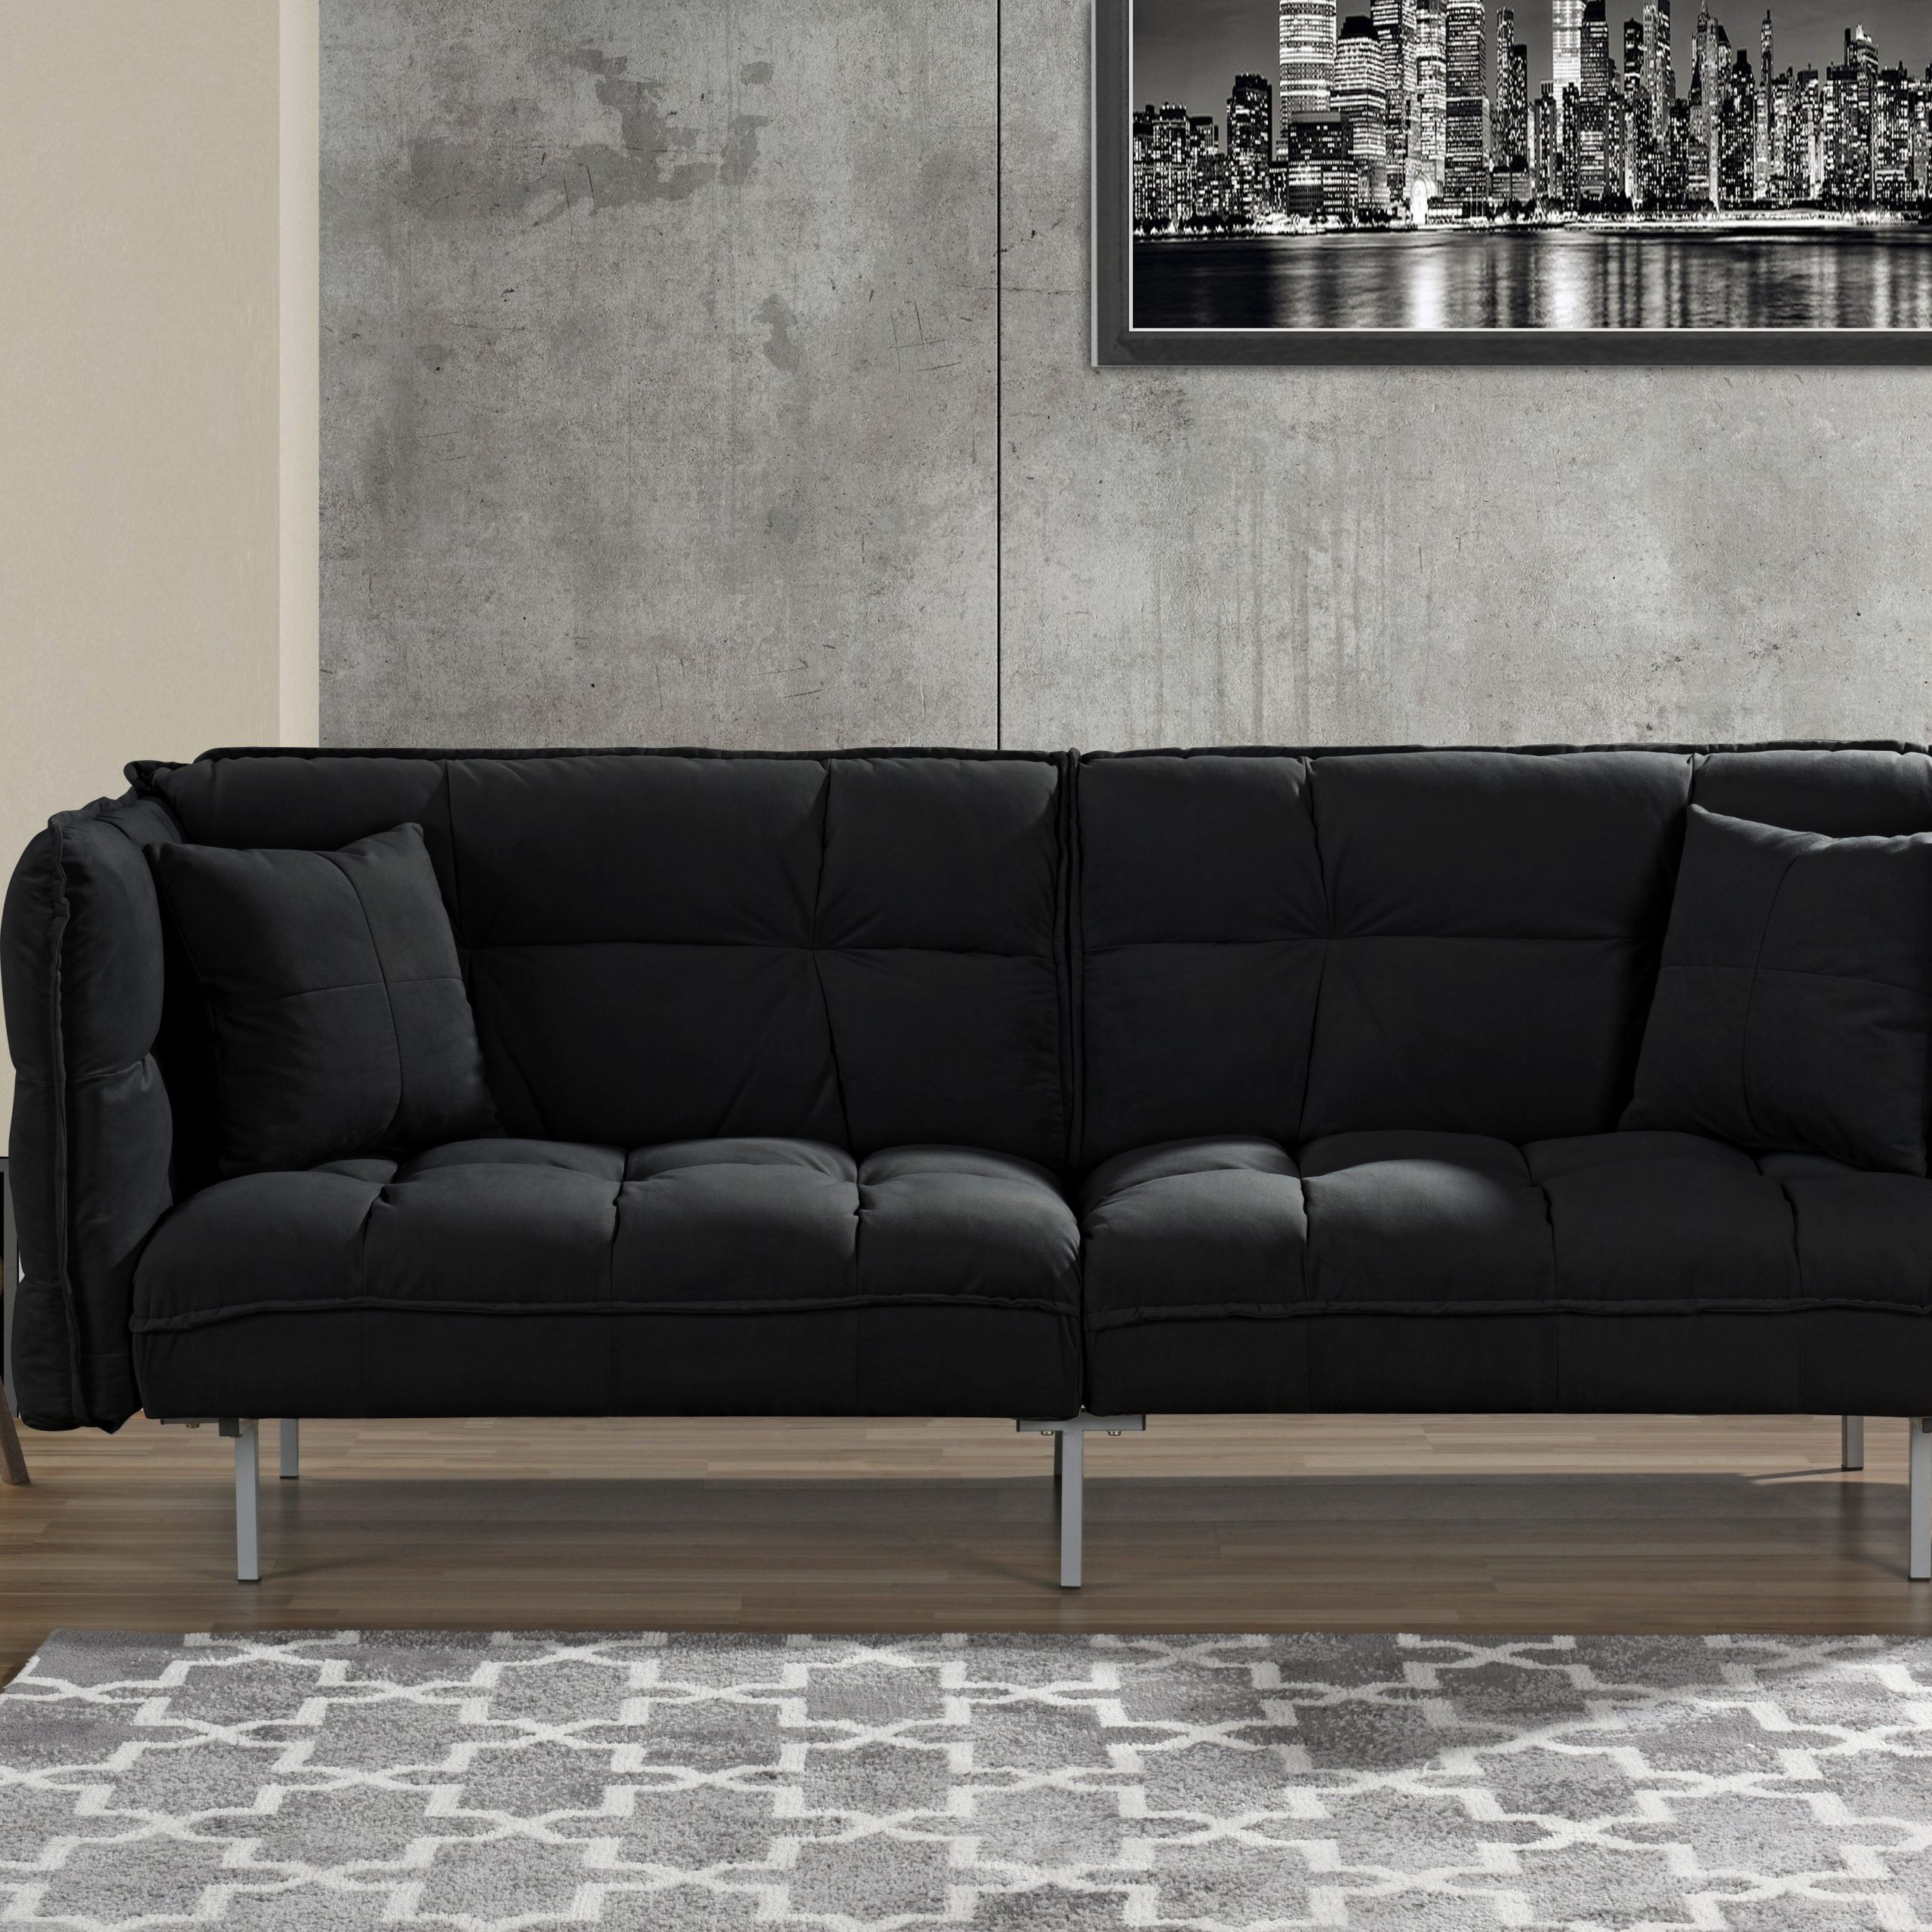 Plush Tufted Velvet Sleeper Sofa, Black – Walmart Intended For 2 Seater Black Velvet Sofa Beds (View 10 of 20)